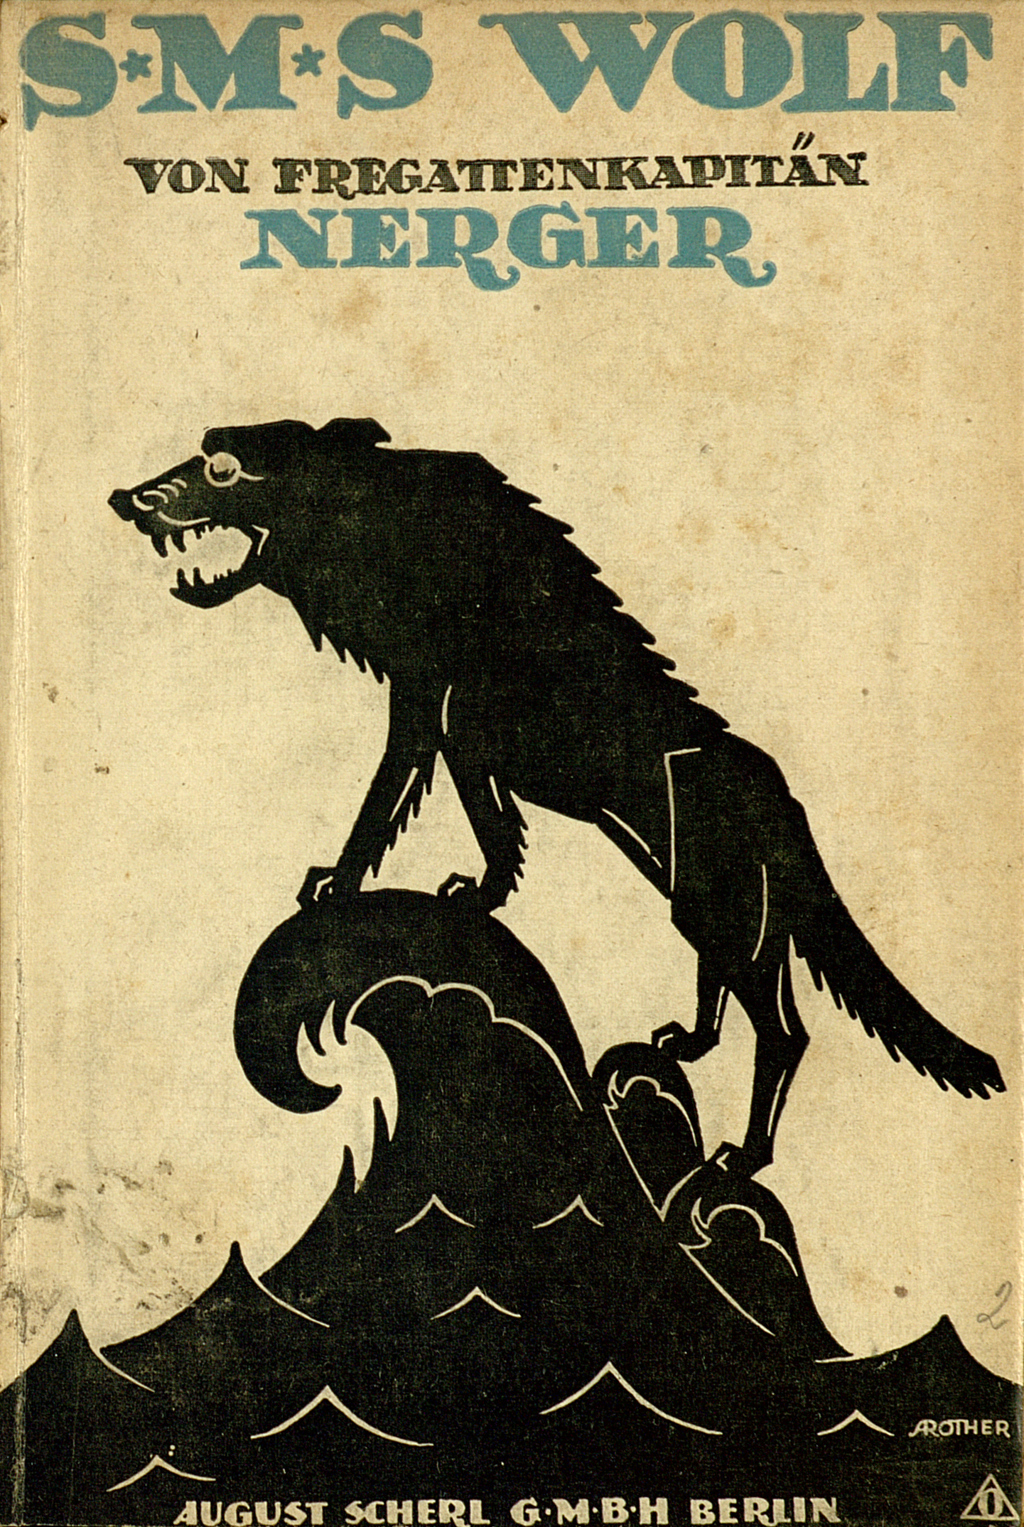 Abgebildet ist der Umschlag der Veröffentlichung: Nerger, Karl August: S.M.S. Wolf. Berlin: Scherl, 1918. Zu sehen ist ein Wolf im Scherenschnitt der auf sich aufbäumenden Wellen steht. 